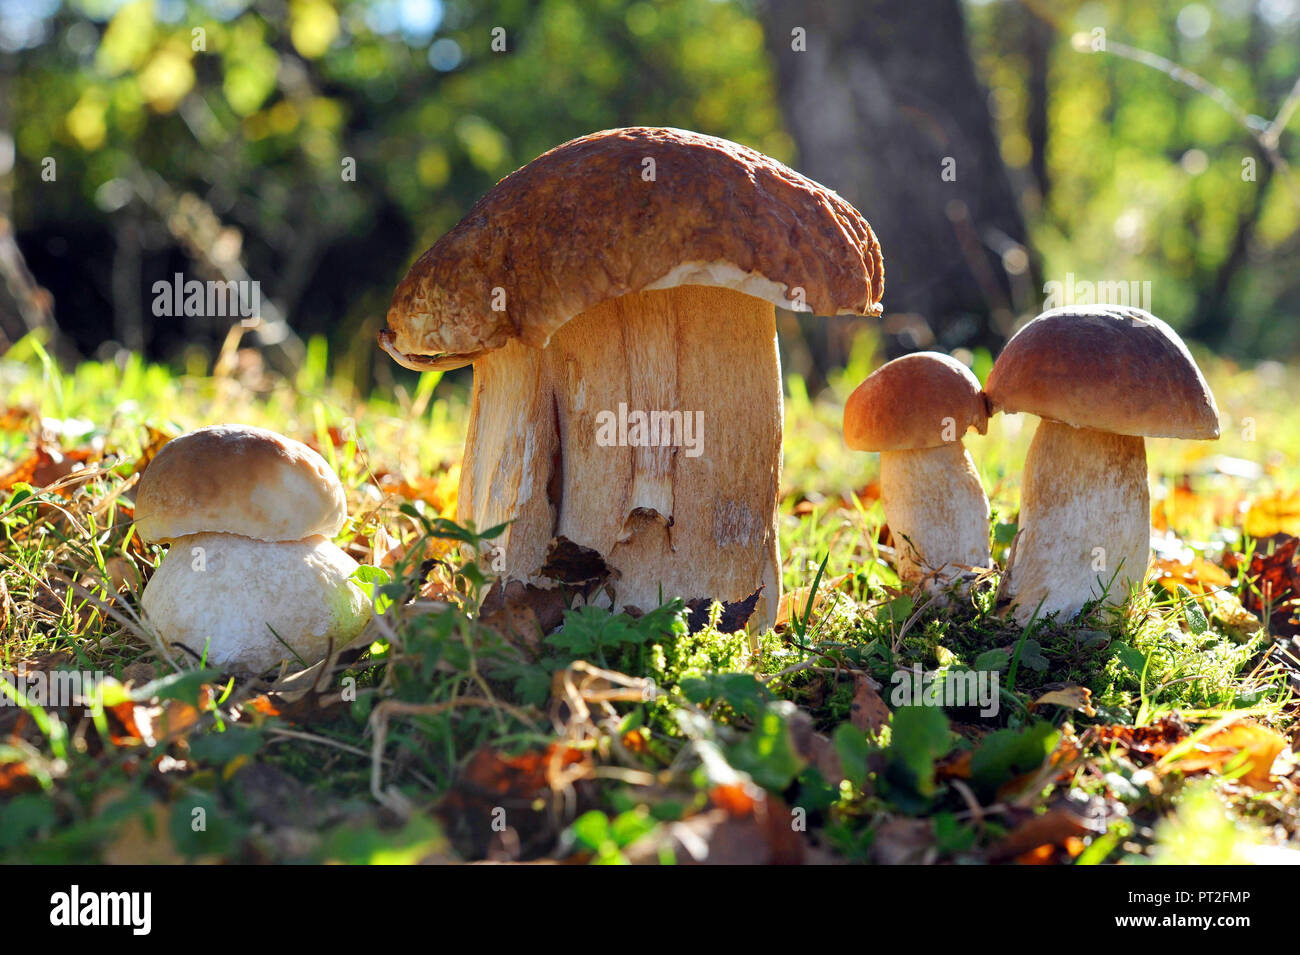 Un gruppo di funghi porcini o cep, Boletus edulis, crescente da luglio a ottobre nei boschi di conifere da soli o in gruppi per la maggior parte sotto i pini e abeti rossi Foto Stock